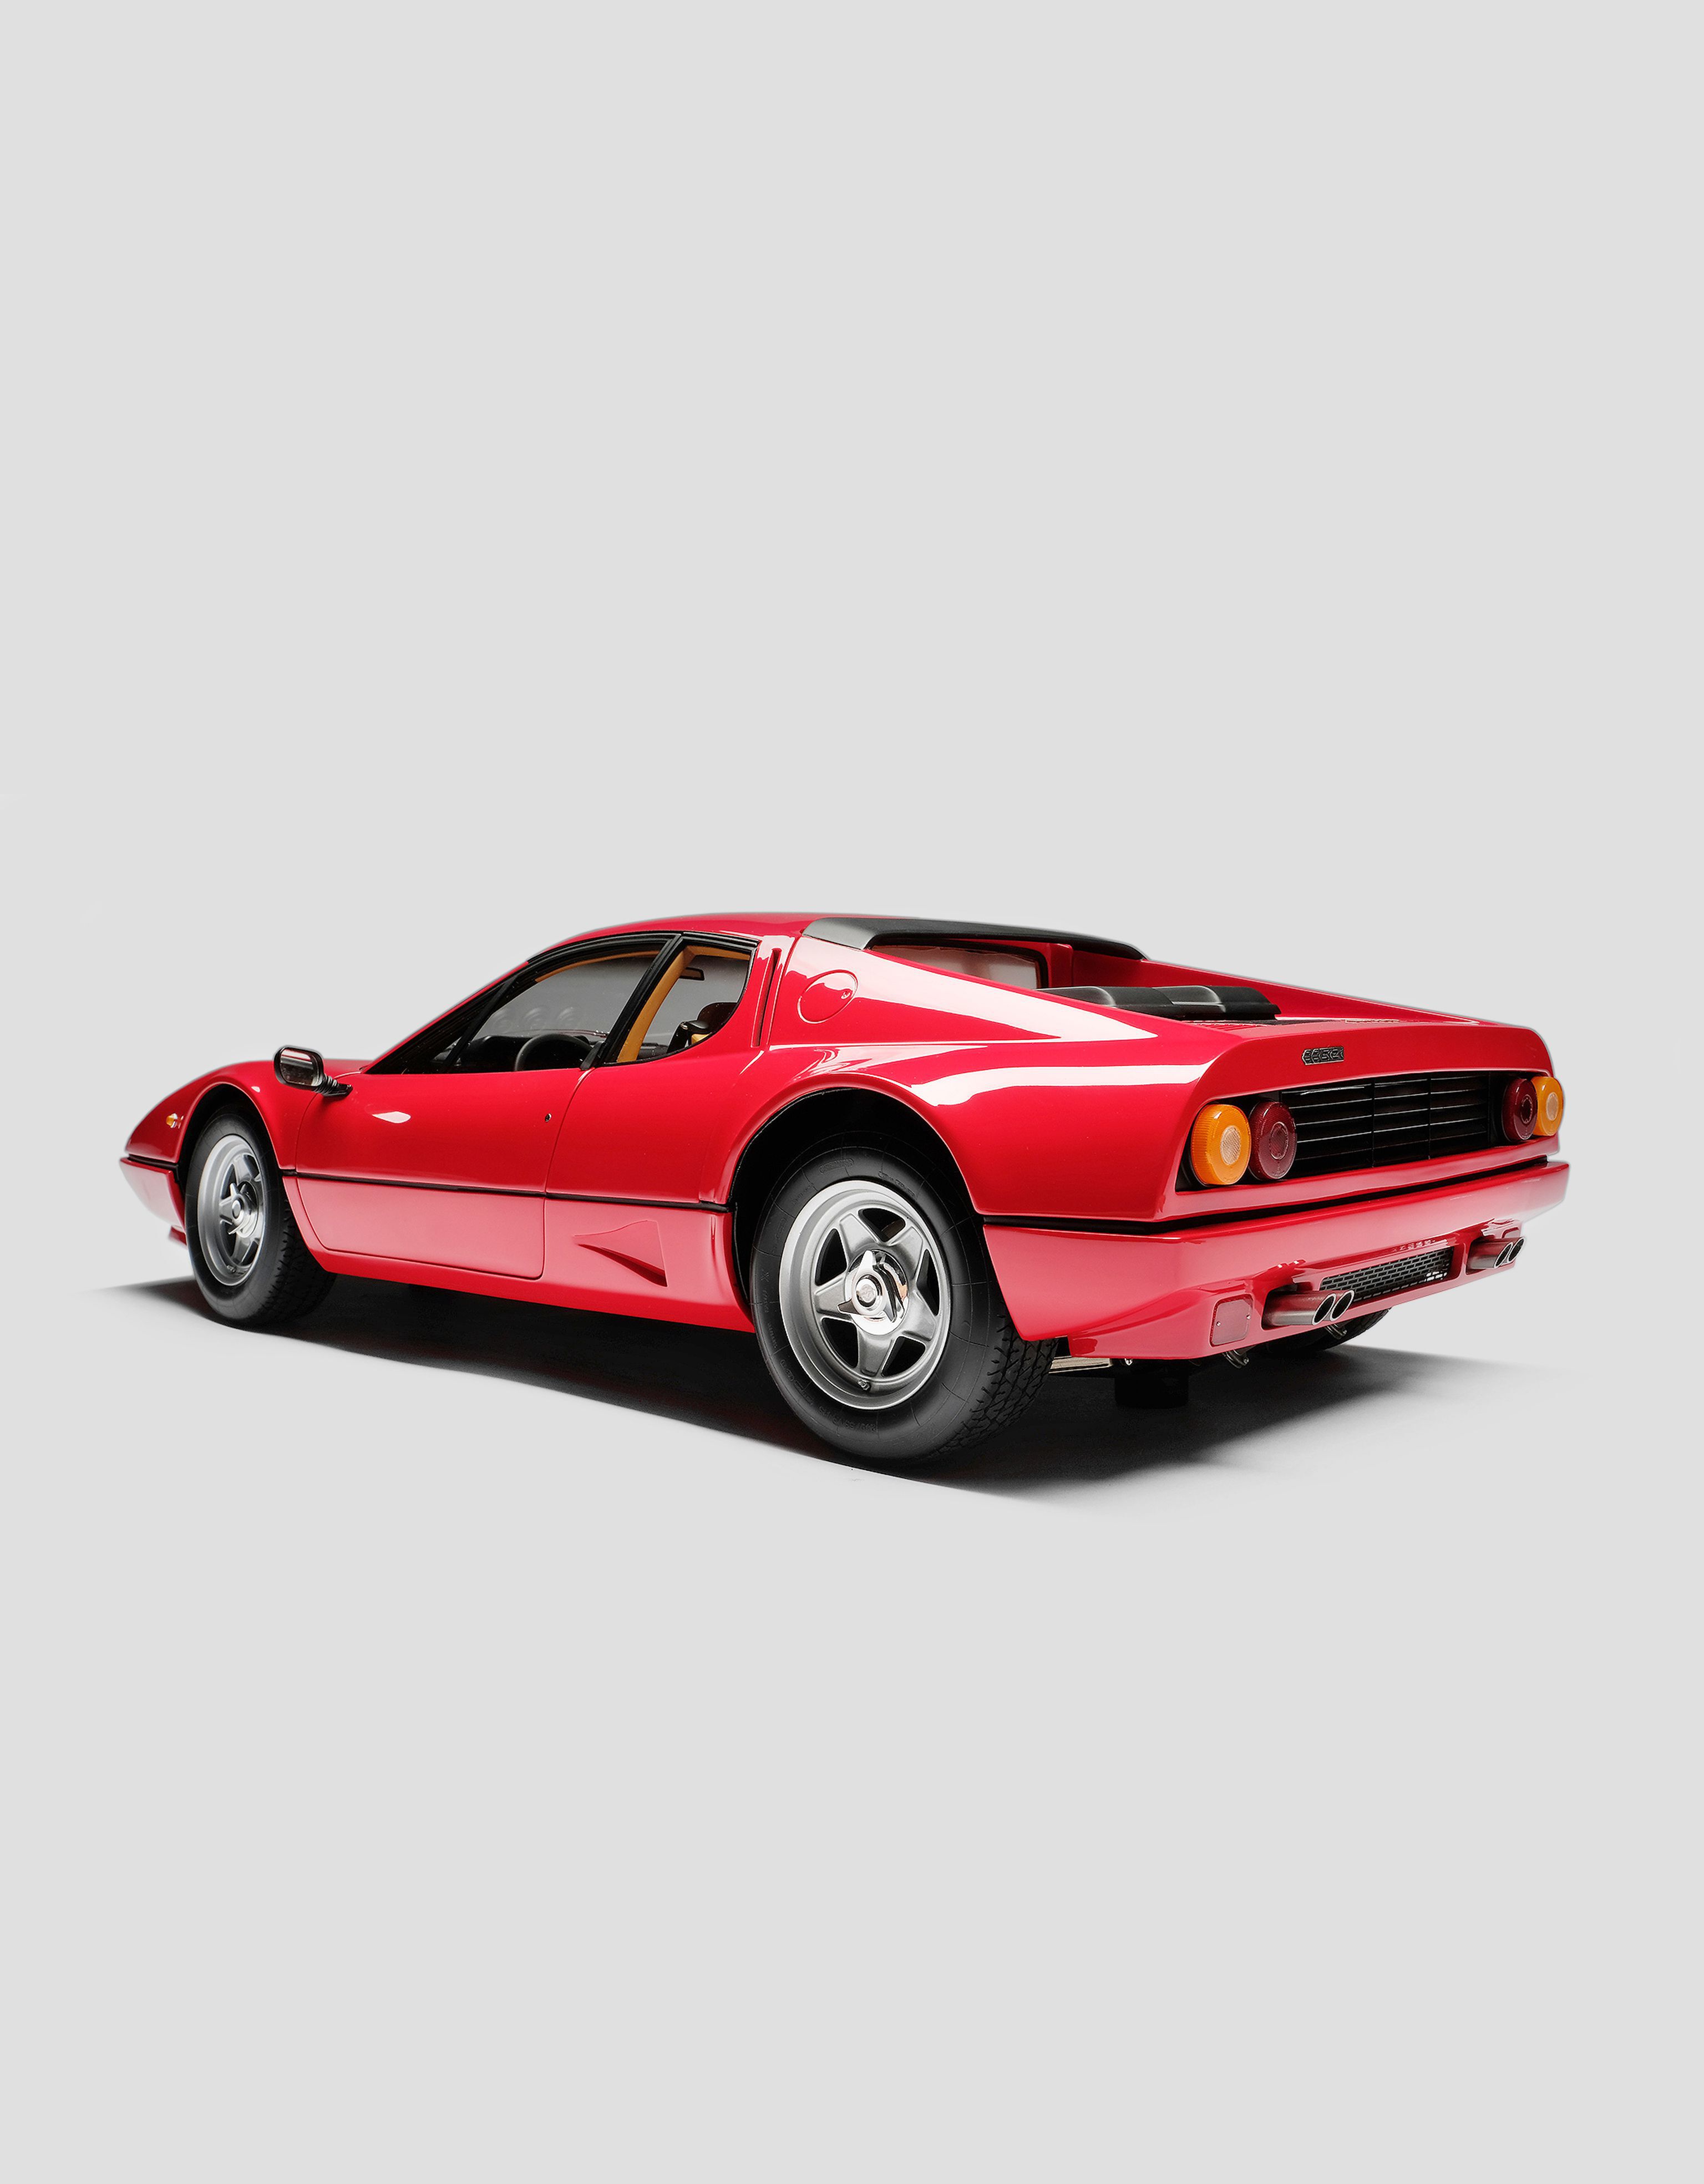 Ferrari Modellauto Ferrari BB 512i im Maßstab 1:8 Rot L7585f